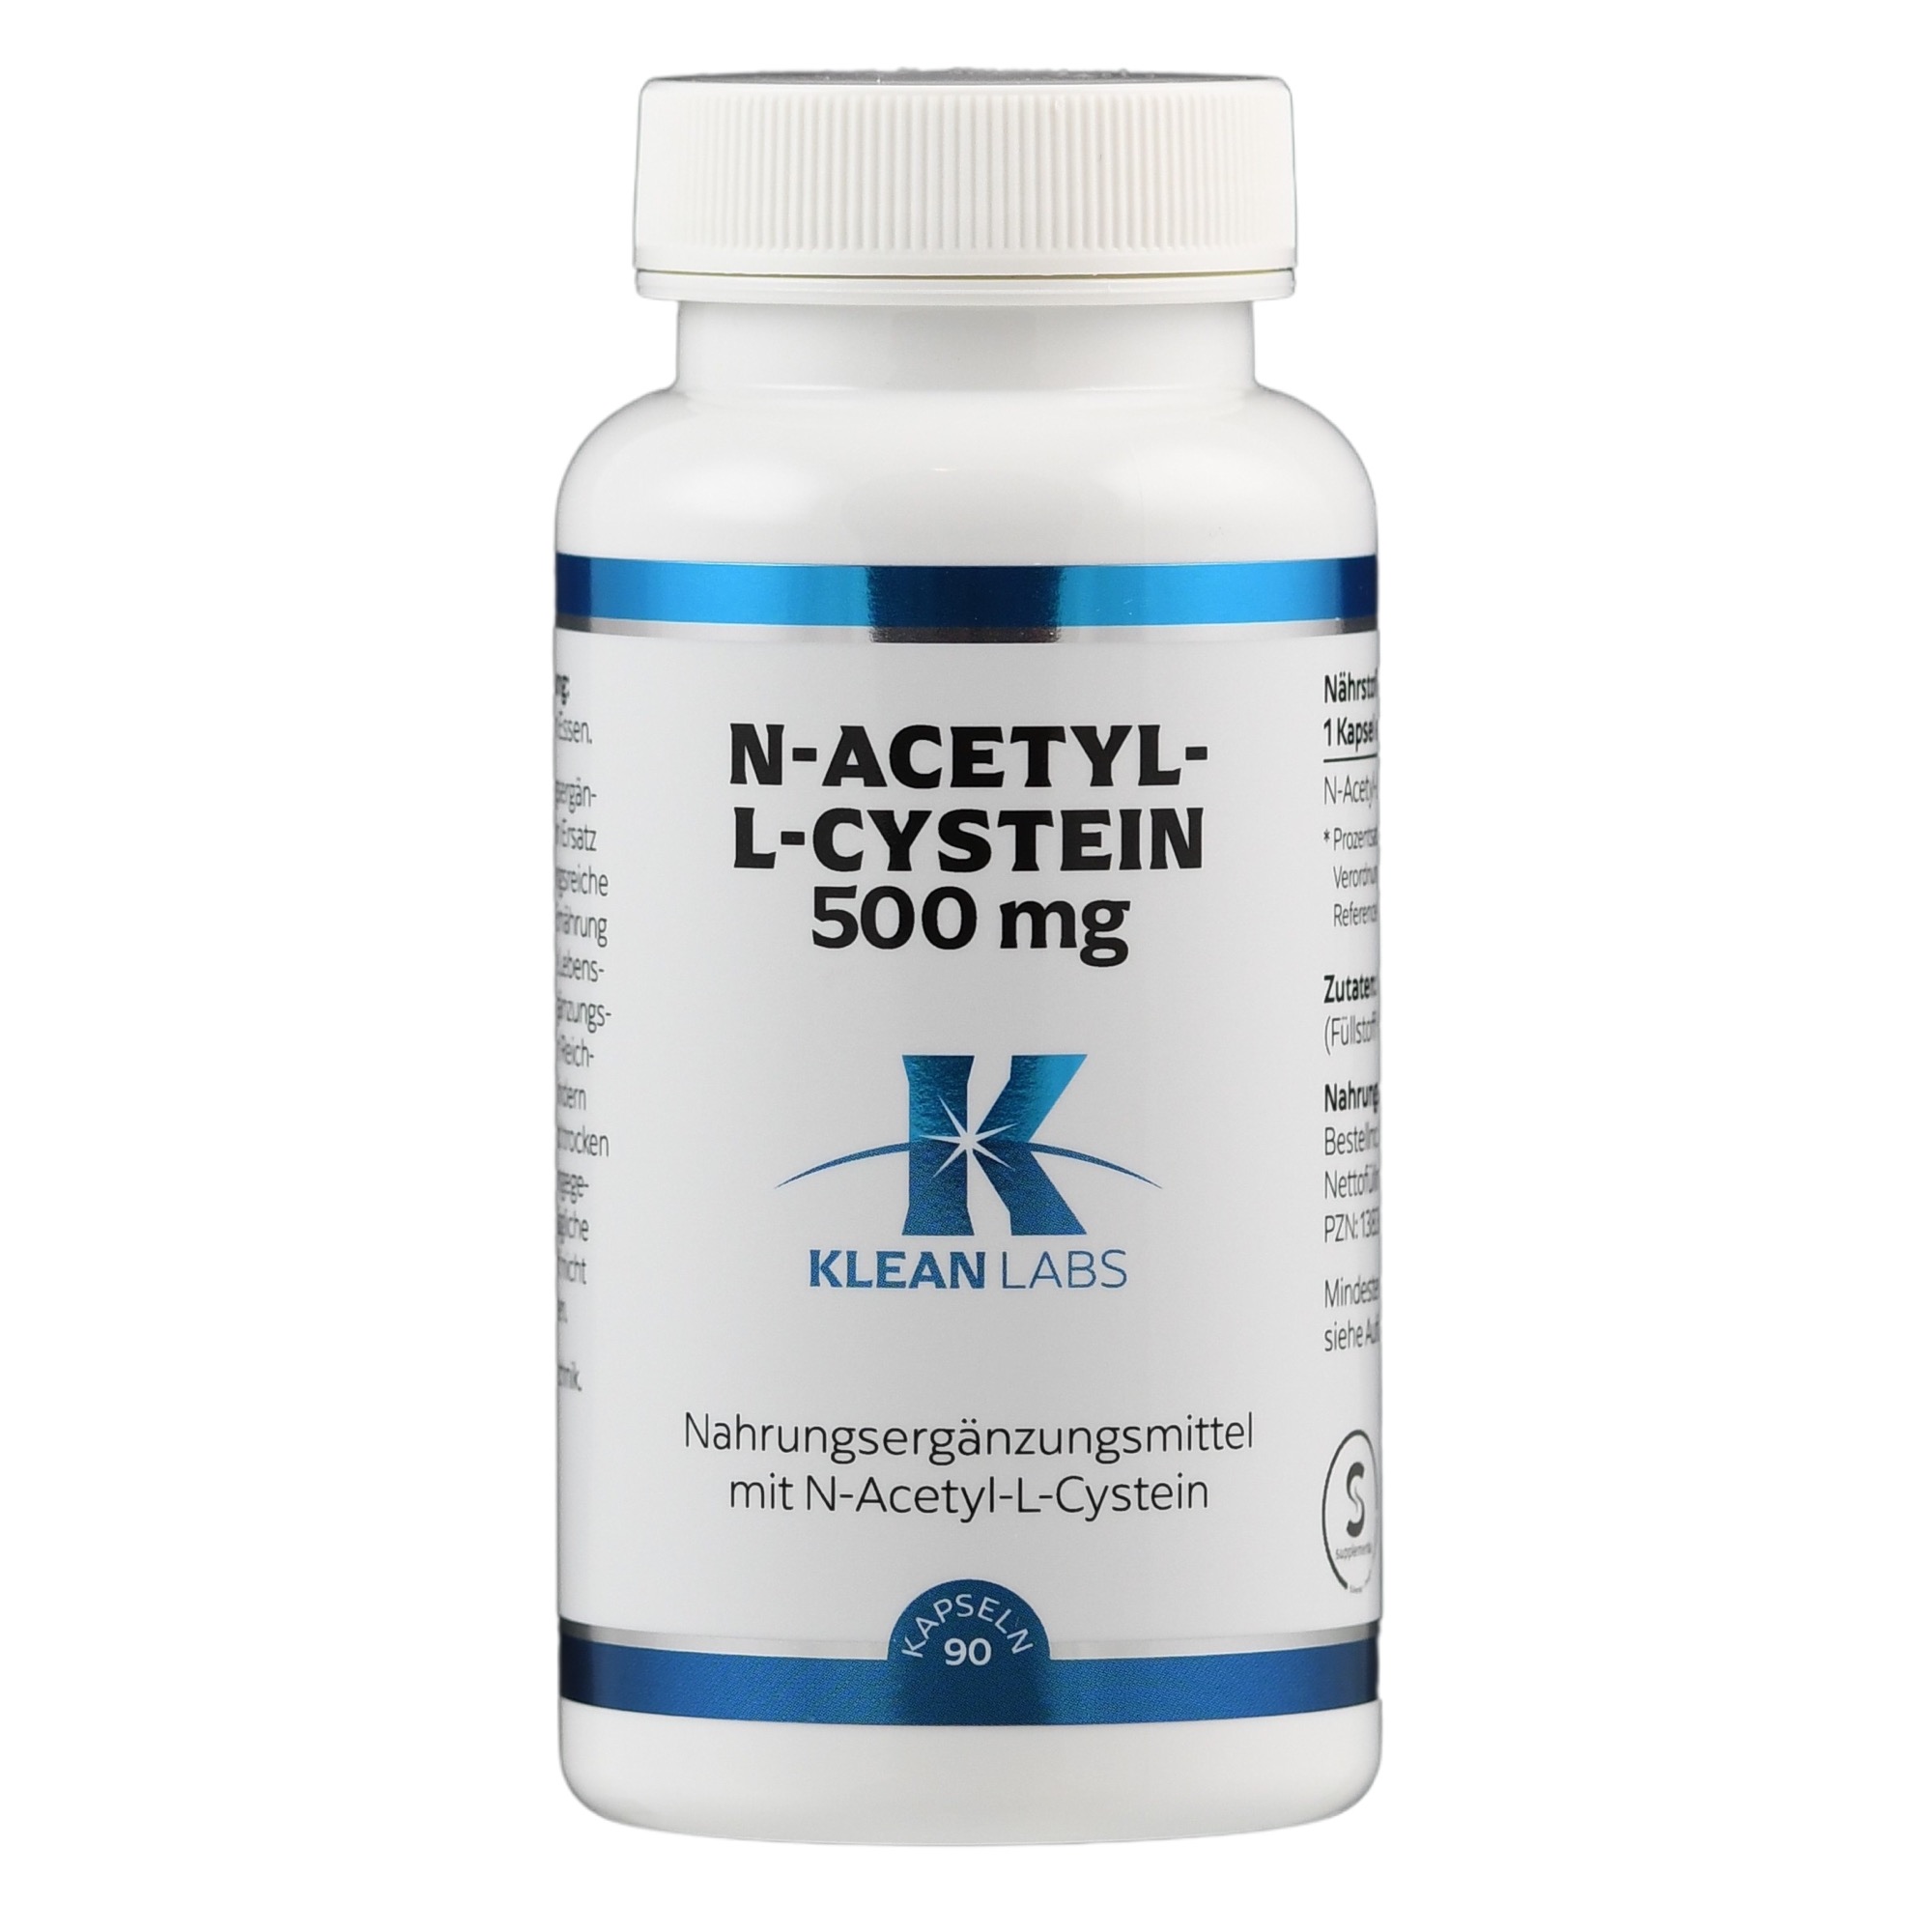 N-Acetyl-L-Cystein 500 mg von Klean Labs.